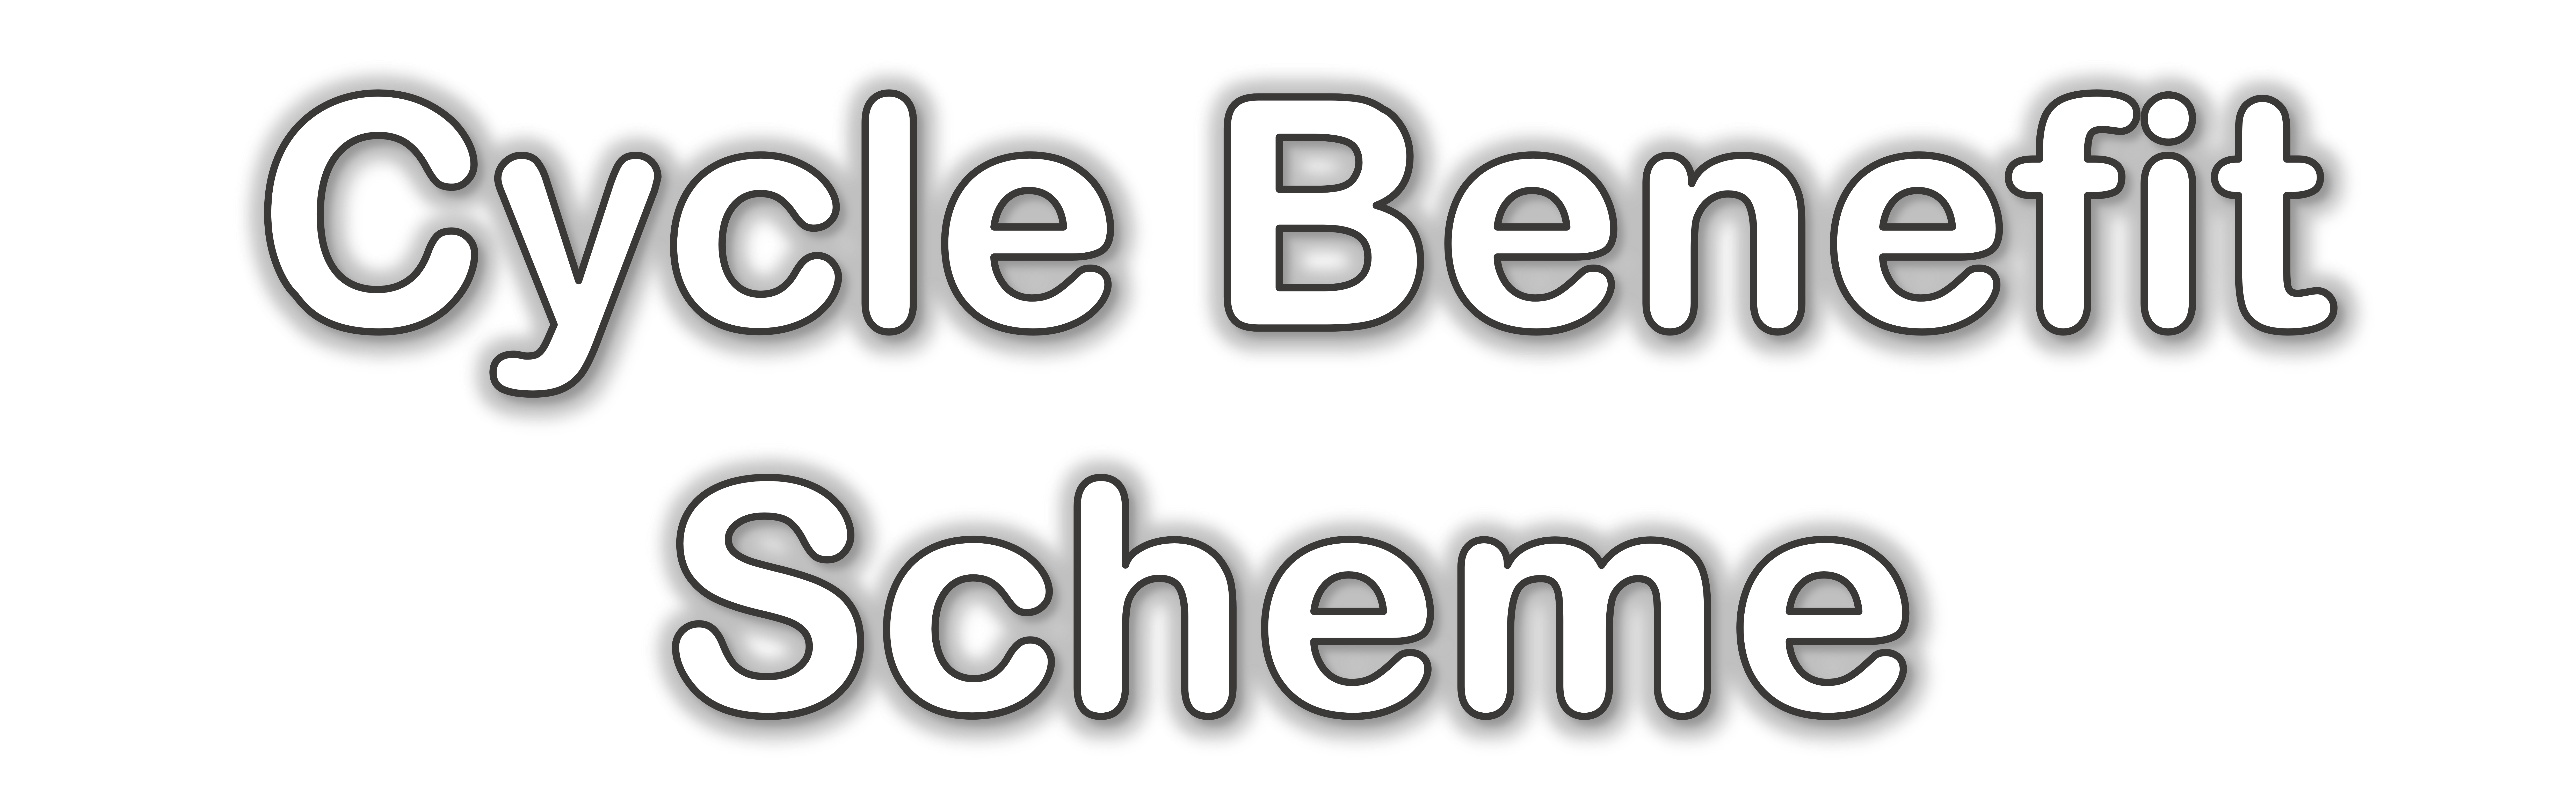 Cycle Benefit Scheme logo